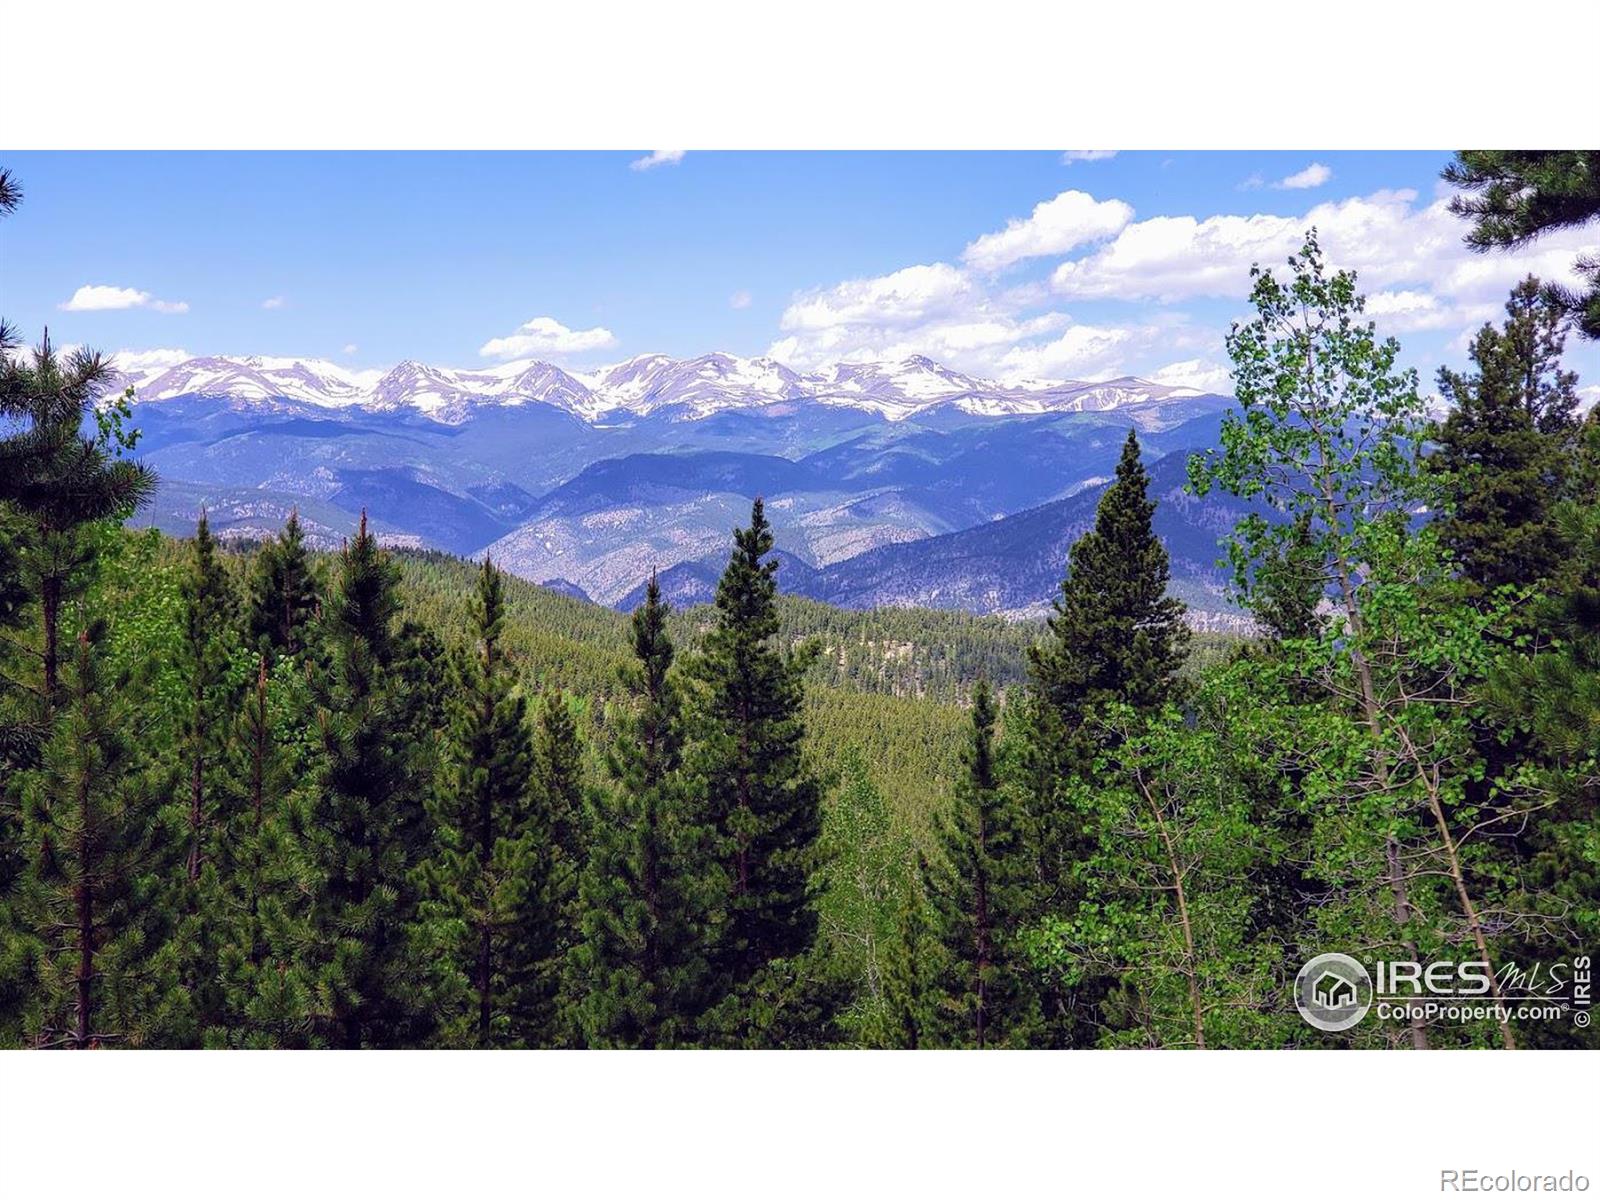 MLS Image #15 for 3540  hidden wilderness road,idaho springs, Colorado